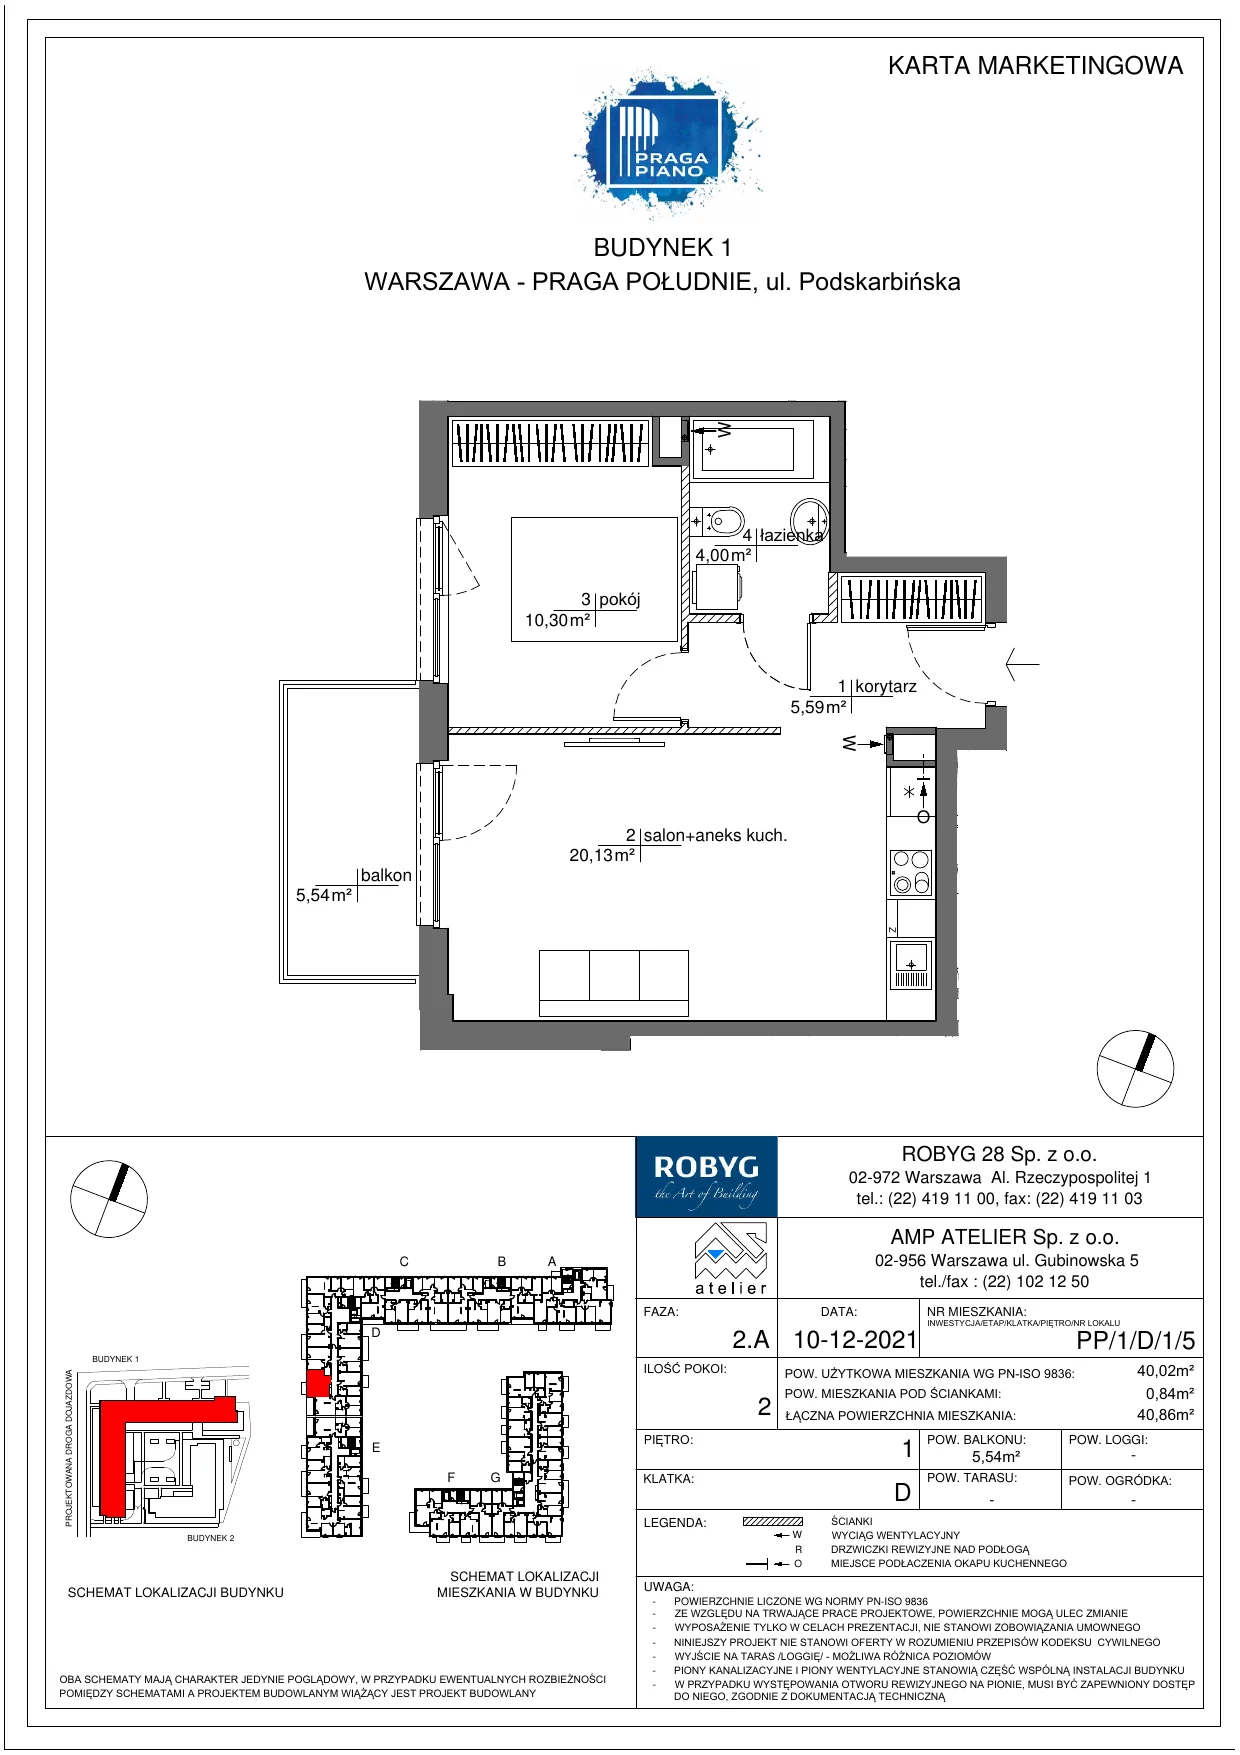 Mieszkanie 40,02 m², piętro 1, oferta nr PP/1/D/1/5, Praga Piano, Warszawa, Praga Południe, Kamionek, ul. Podskarbińska